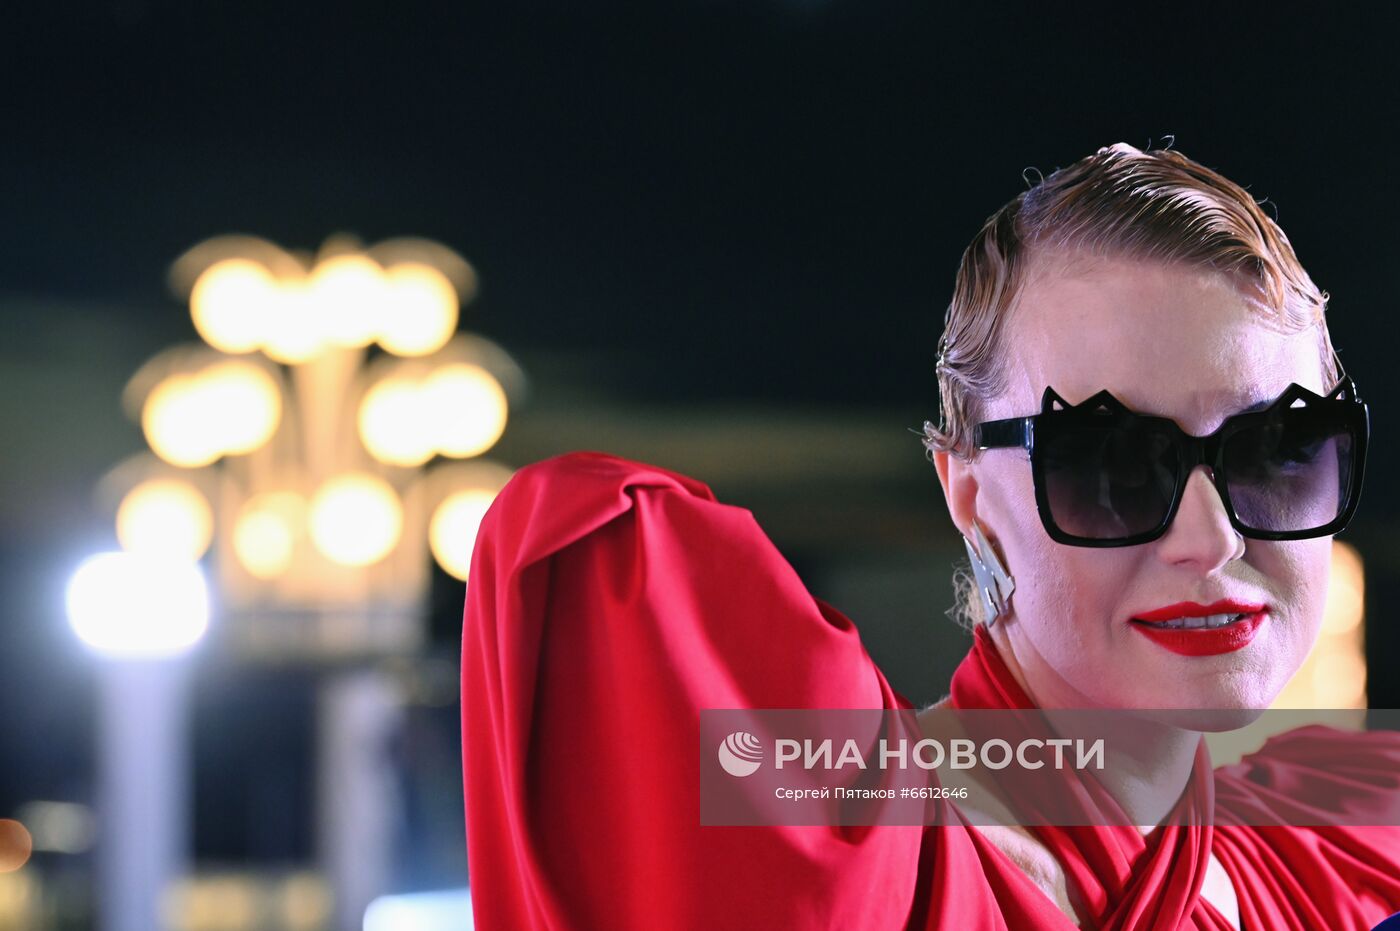 Дизайнер У. Добровская представила свою коллекцию одежды для московского метро